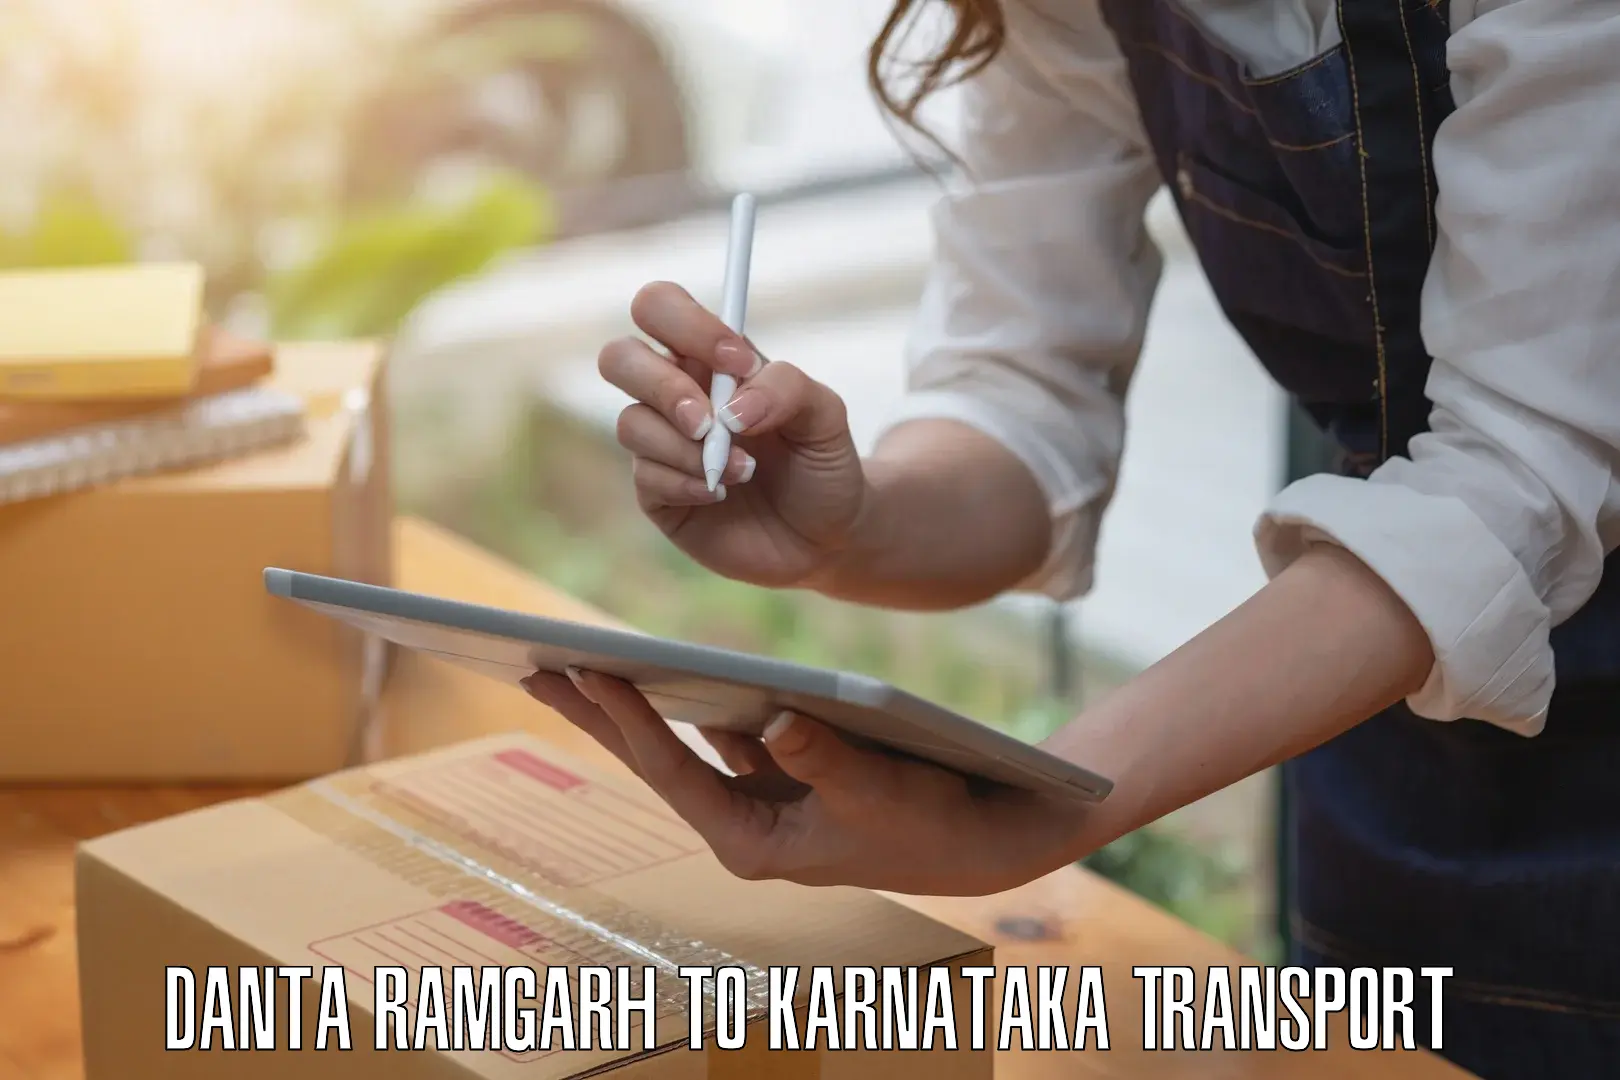 Shipping partner Danta Ramgarh to Kadaba